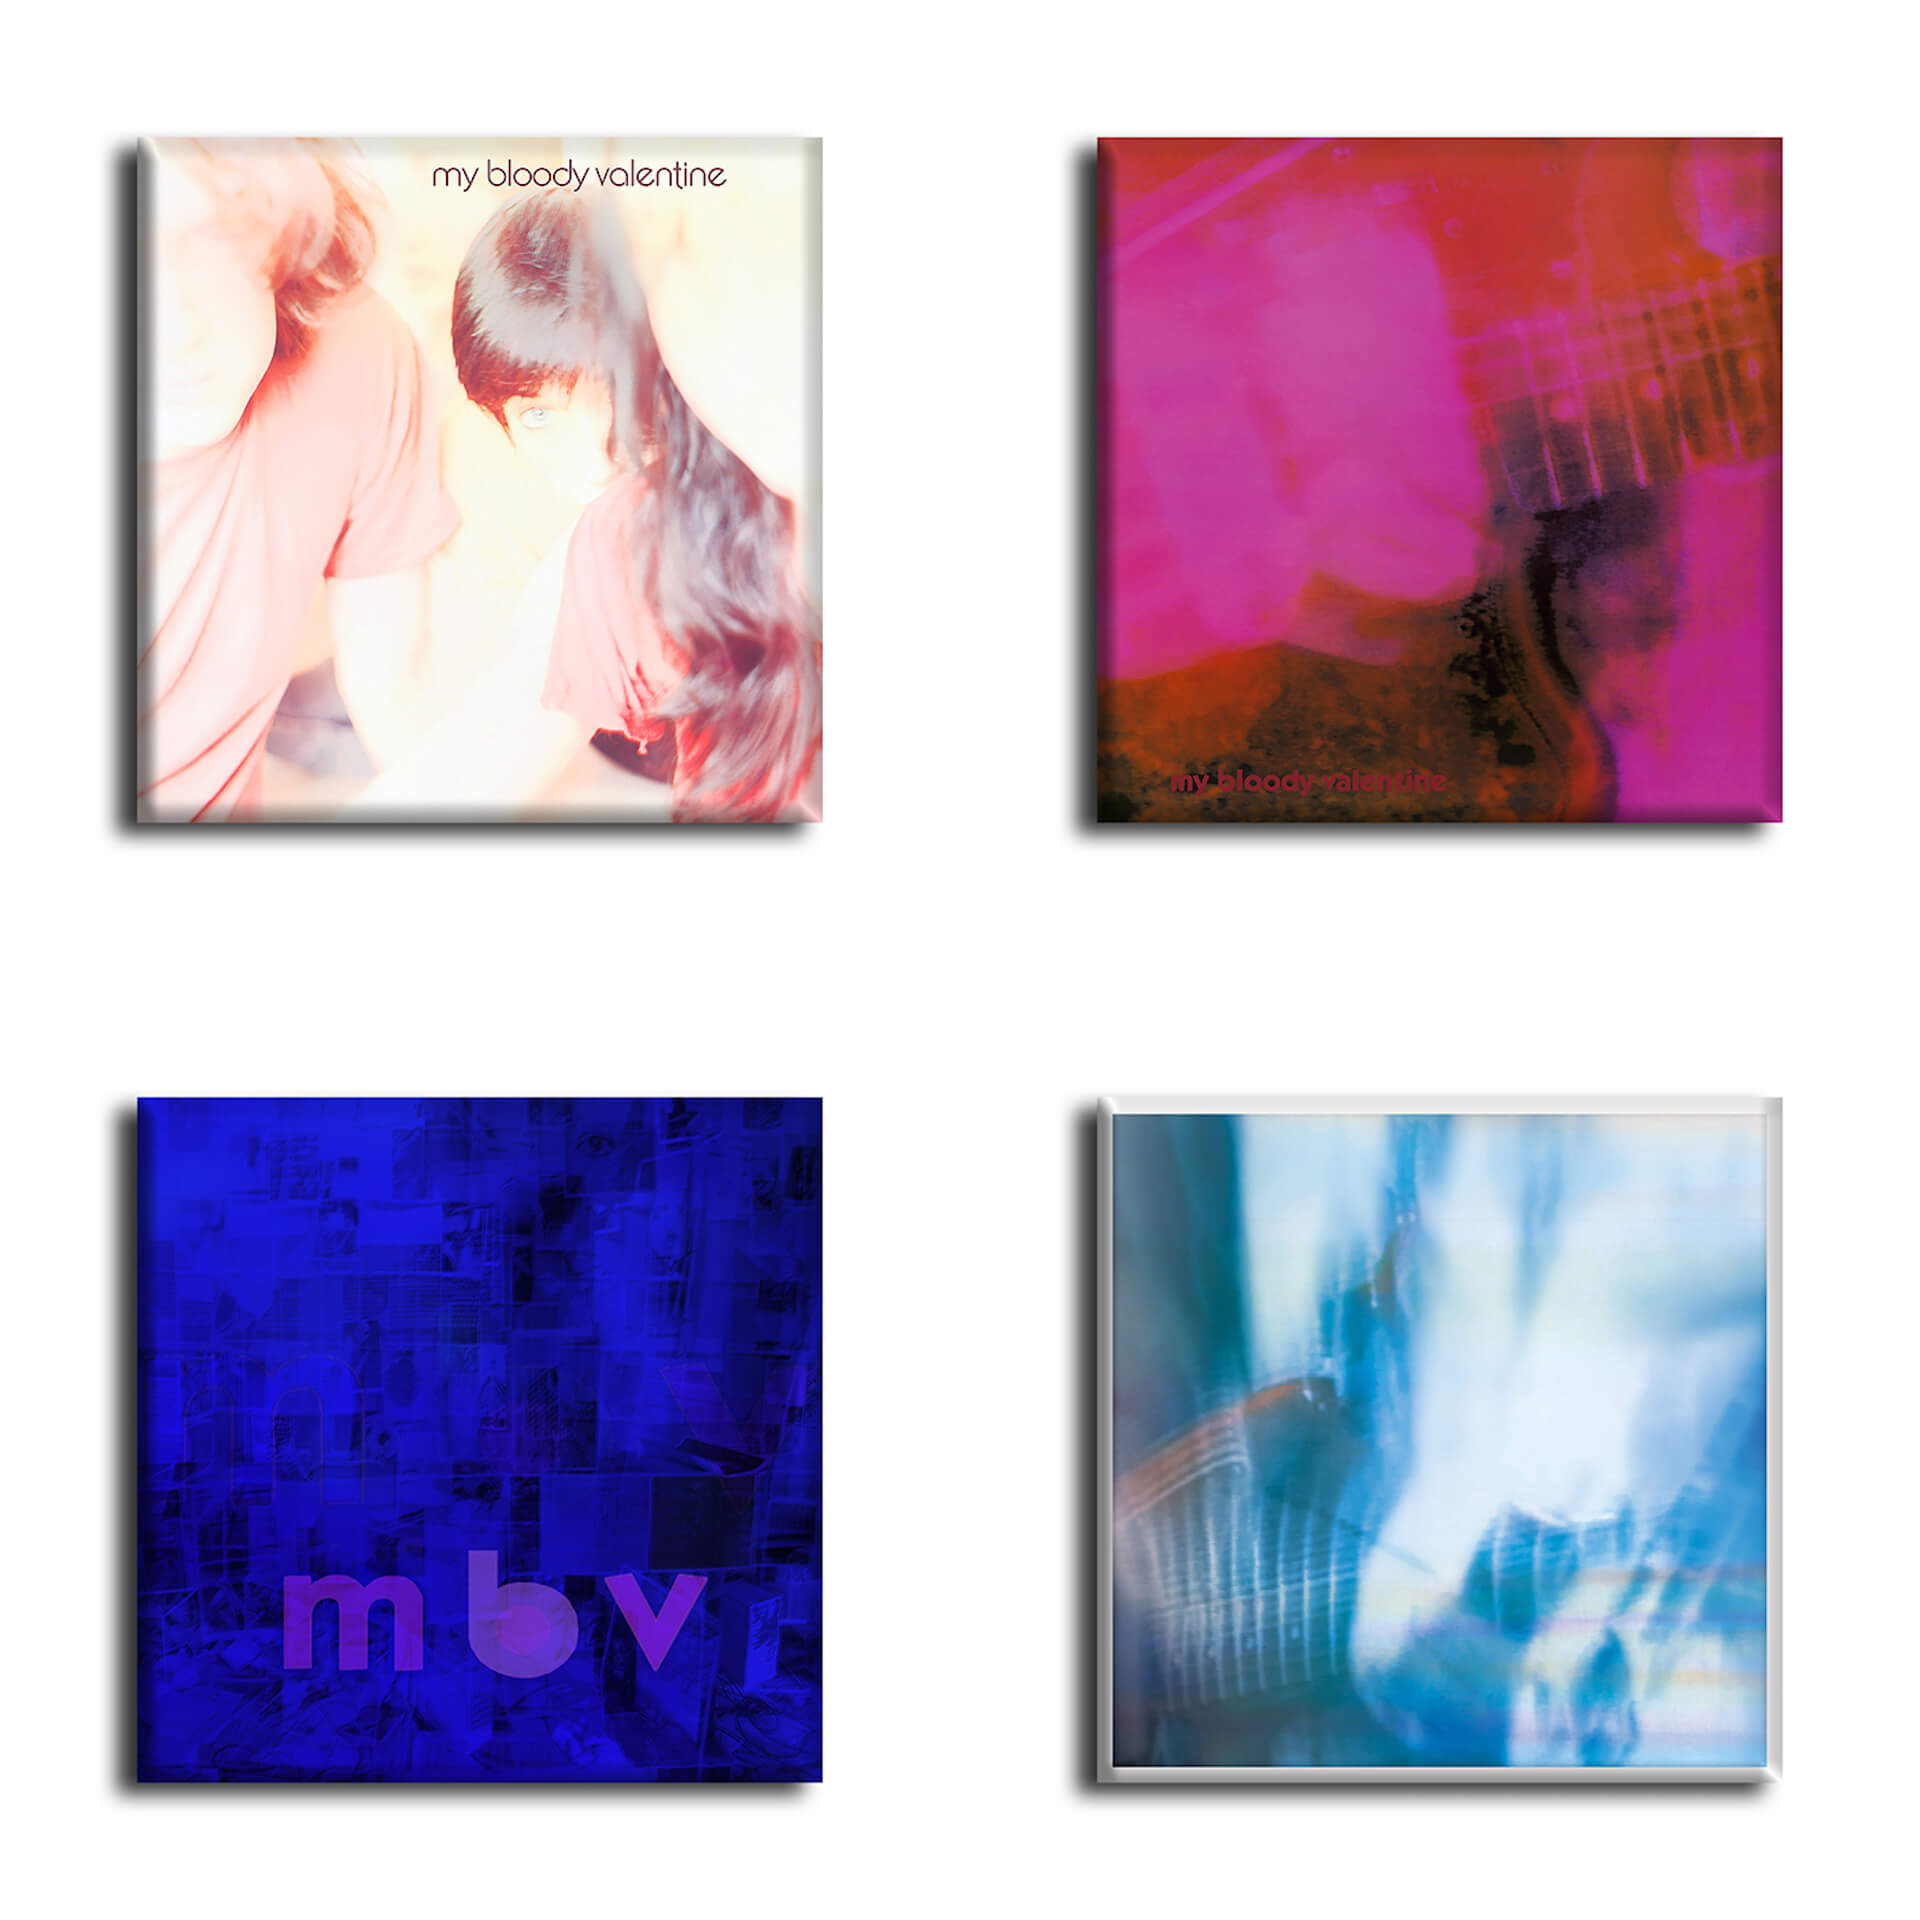 My Bloody Valentine新装盤CD&LPが今週発売。レコードショップ別の各種特典が解禁